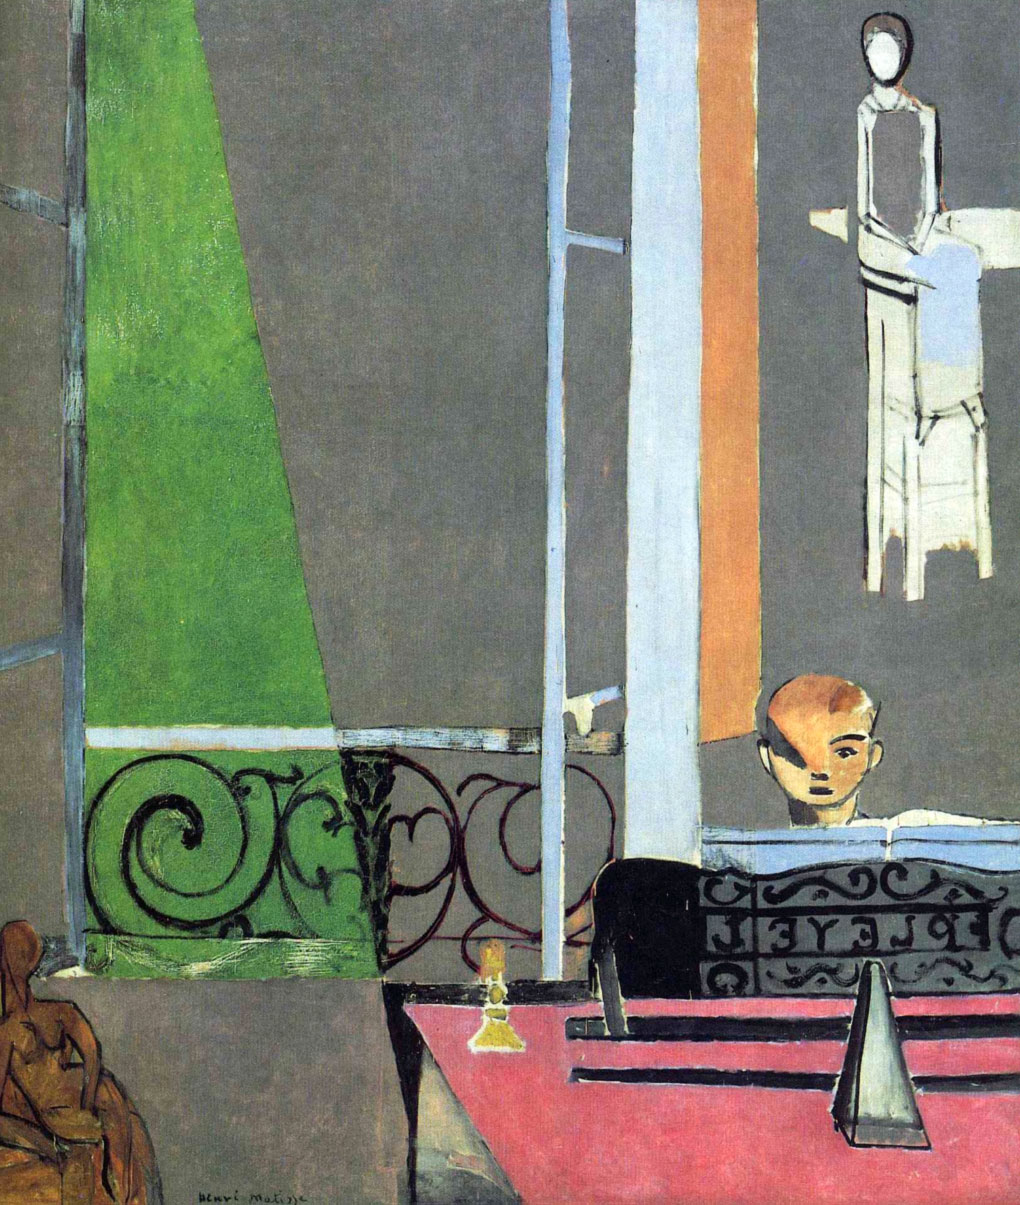 Lezione di piano - Piano lesson - Matisse